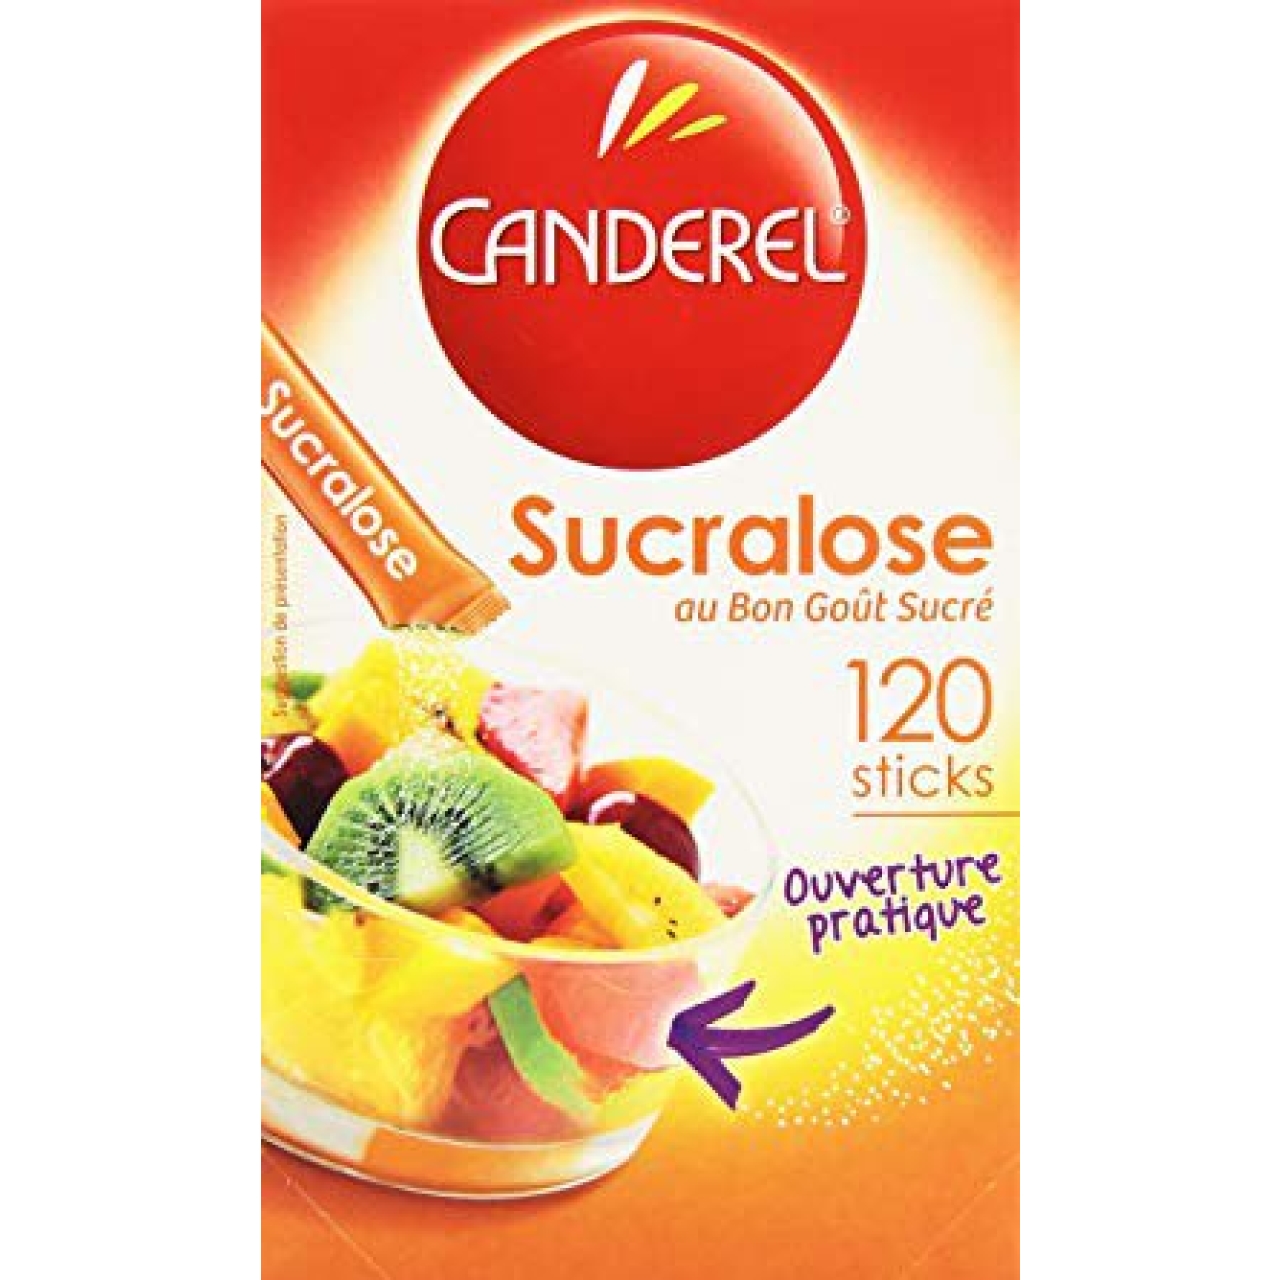 شیرین کننده کاندرل مدل Sucralose ساشه 120 عددی